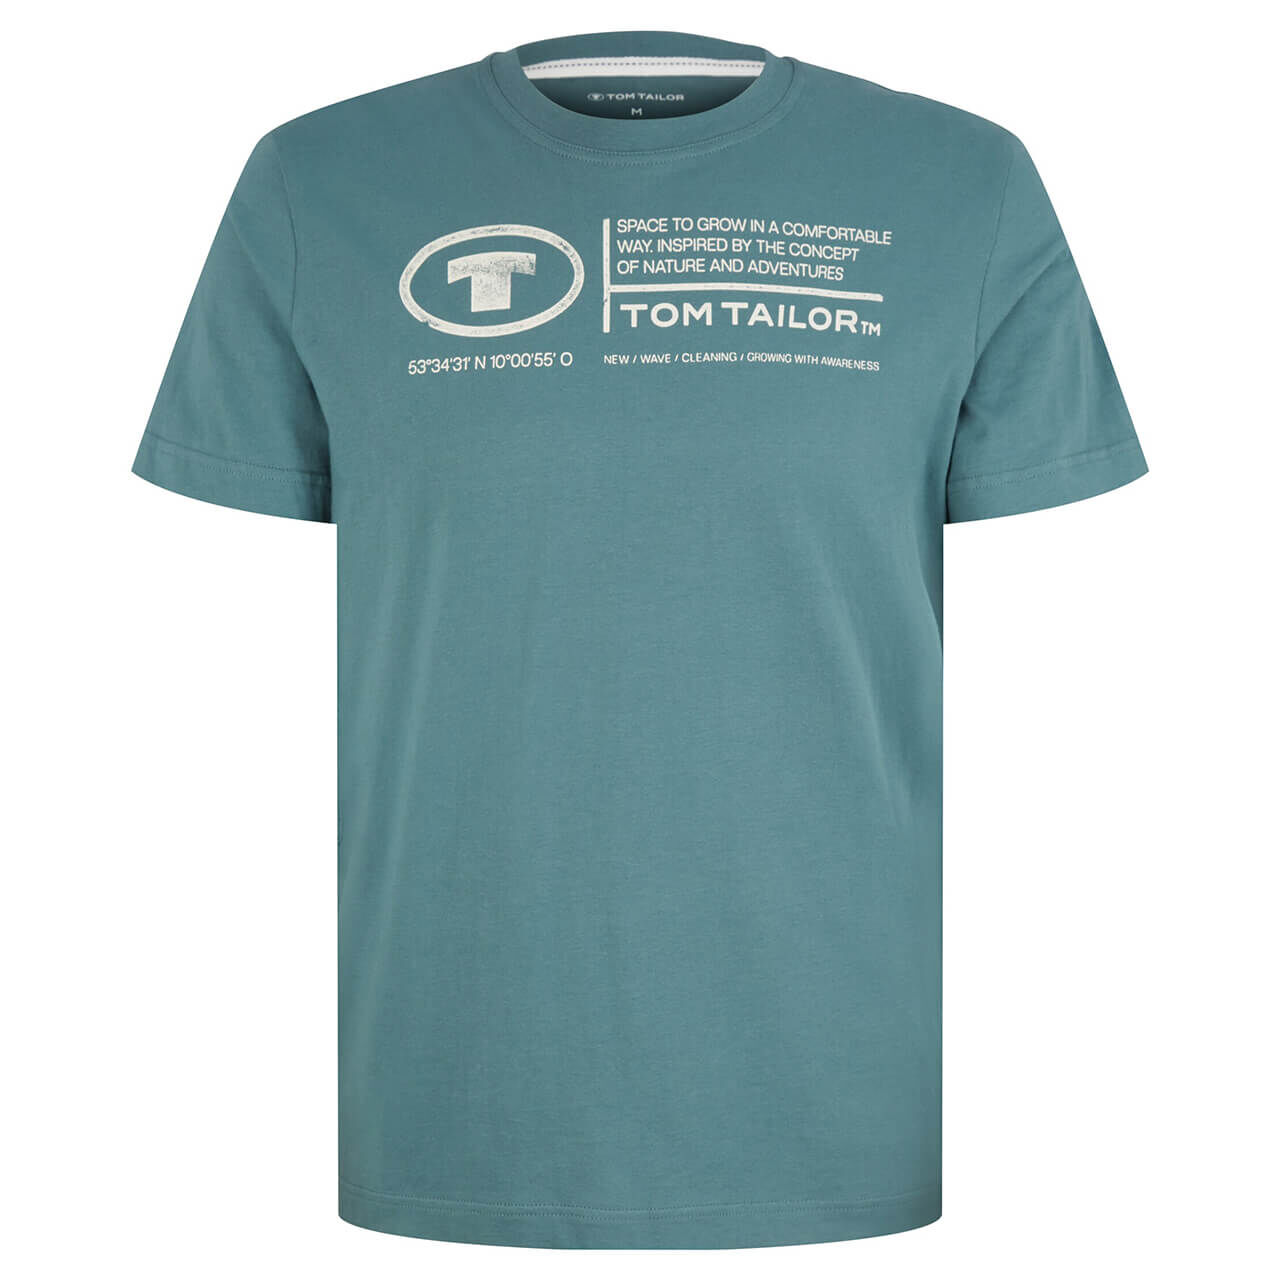 Tom Tailor Herren T-Shirt deep bluish green logo wording 